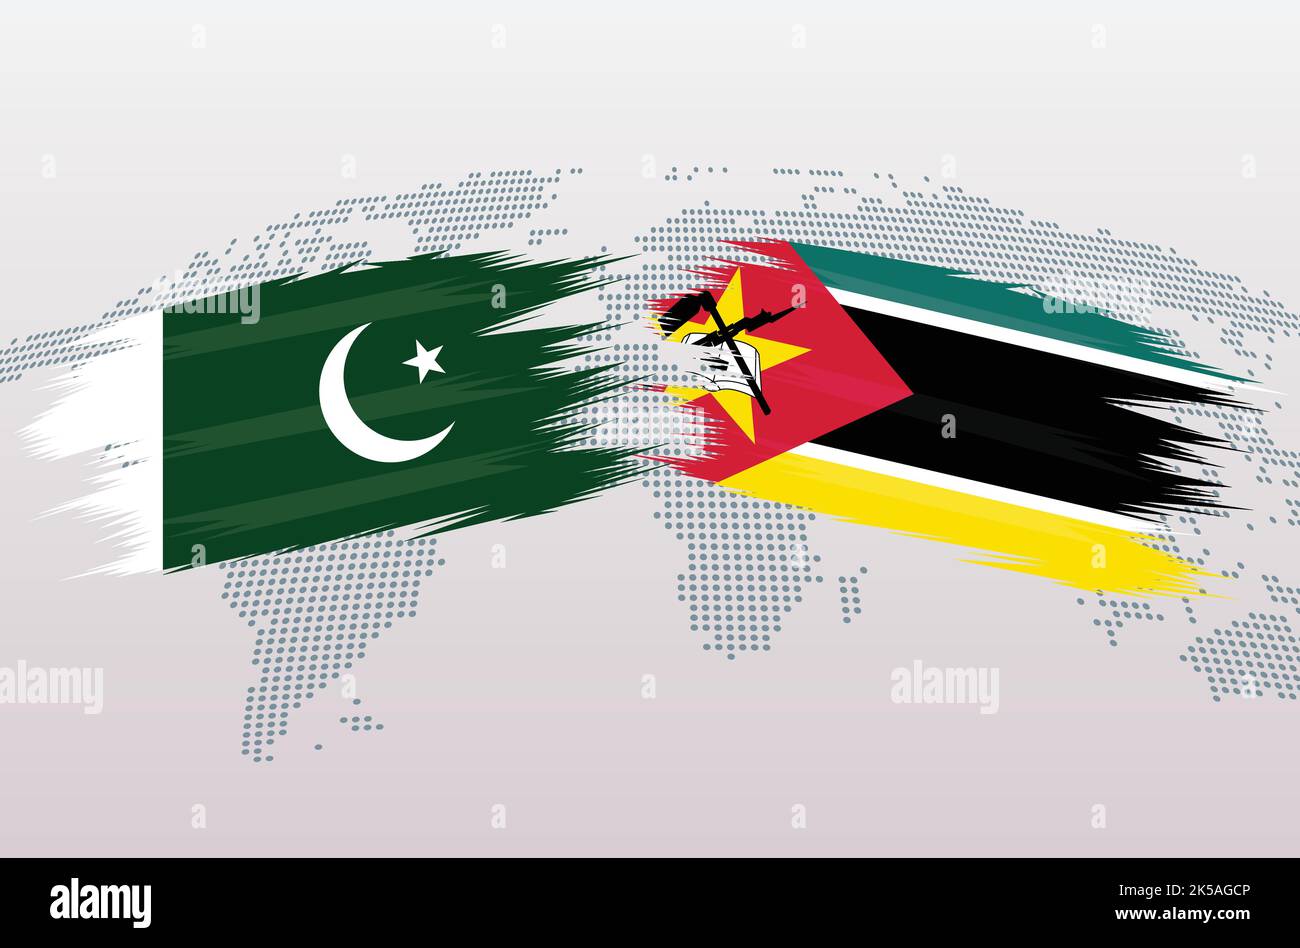 Bandiere Pakistan vs Mozambico. Bandiere della Repubblica islamica del Pakistan contro Mozambico, isolate su sfondo grigio della mappa del mondo. Illustrazione vettoriale. Illustrazione Vettoriale